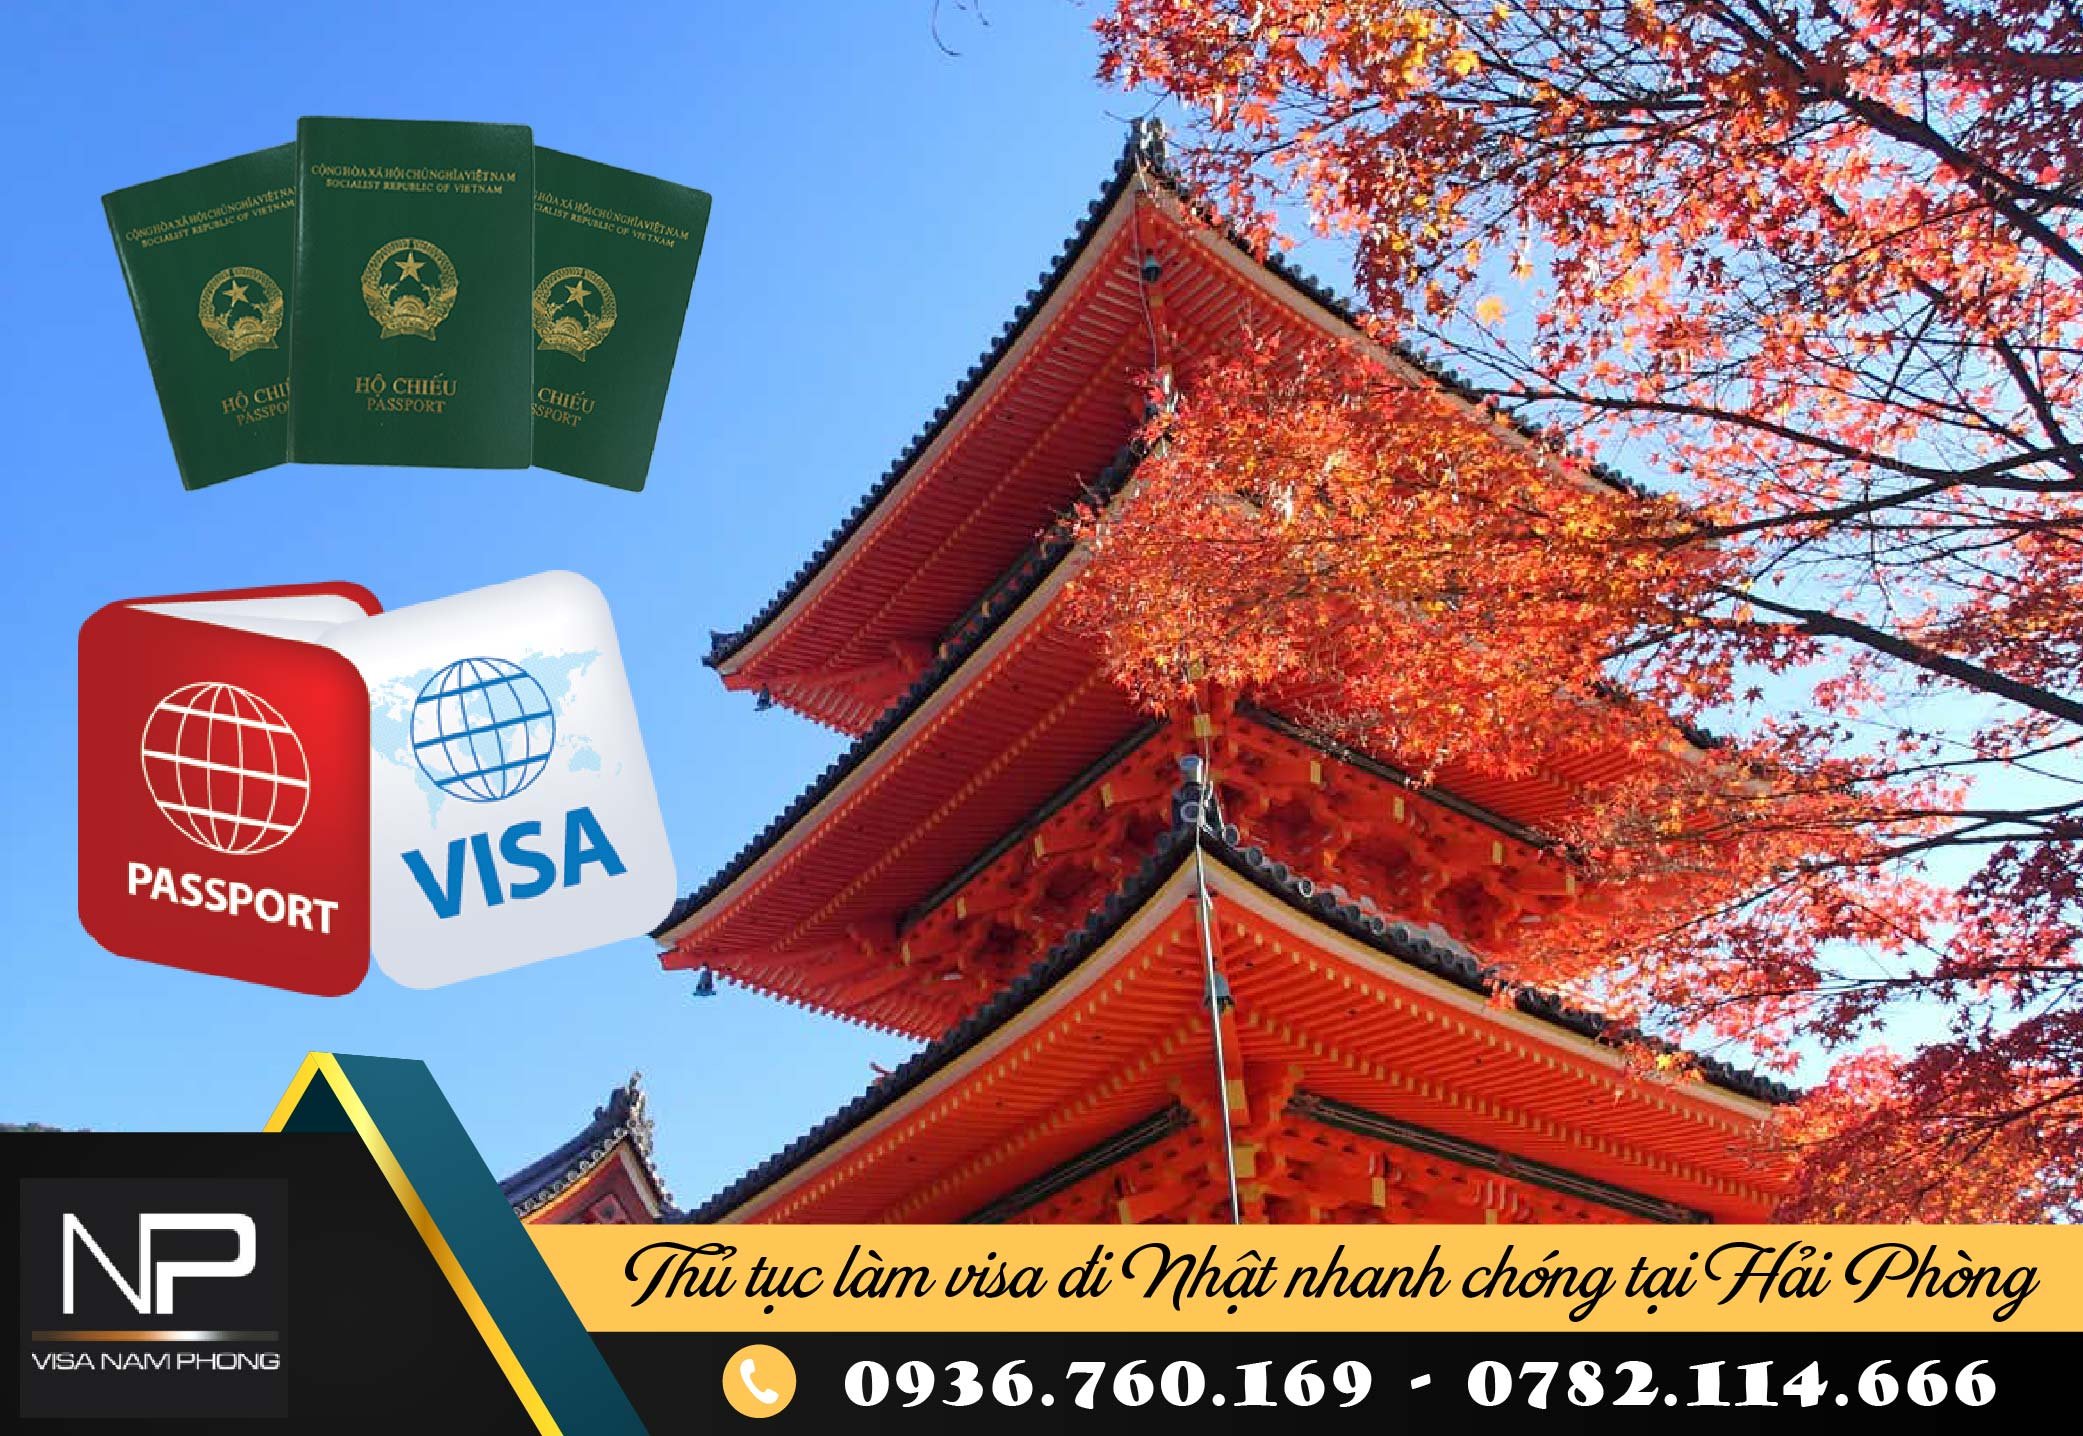 Thủ tục làm visa đi Nhật nhanh chóng tại Hải Phòng